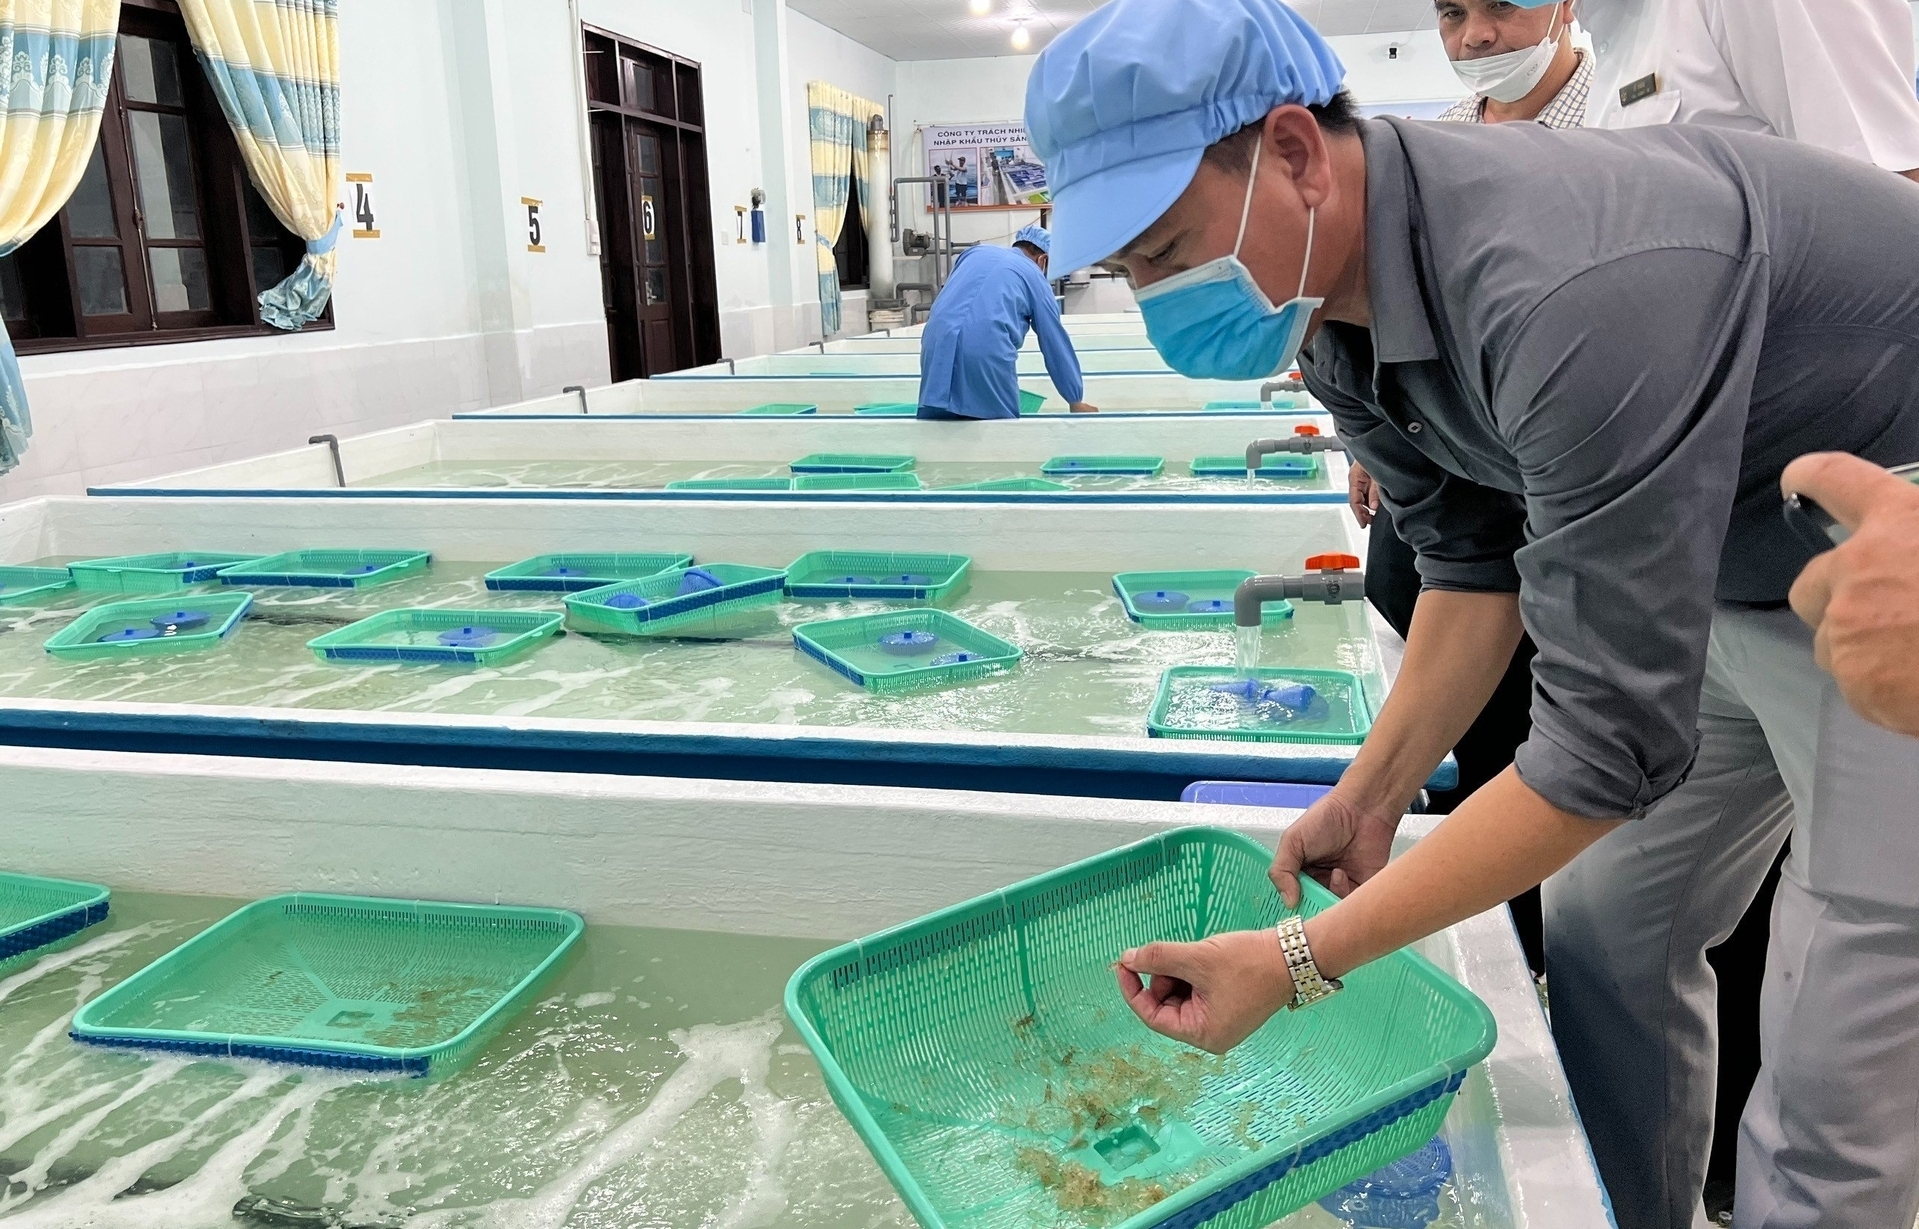 Khu kiểm dịch nhập khẩu tôm hùm giống về theo dõi cách ly tại tỉnh Khánh Hòa. Ảnh: KS.